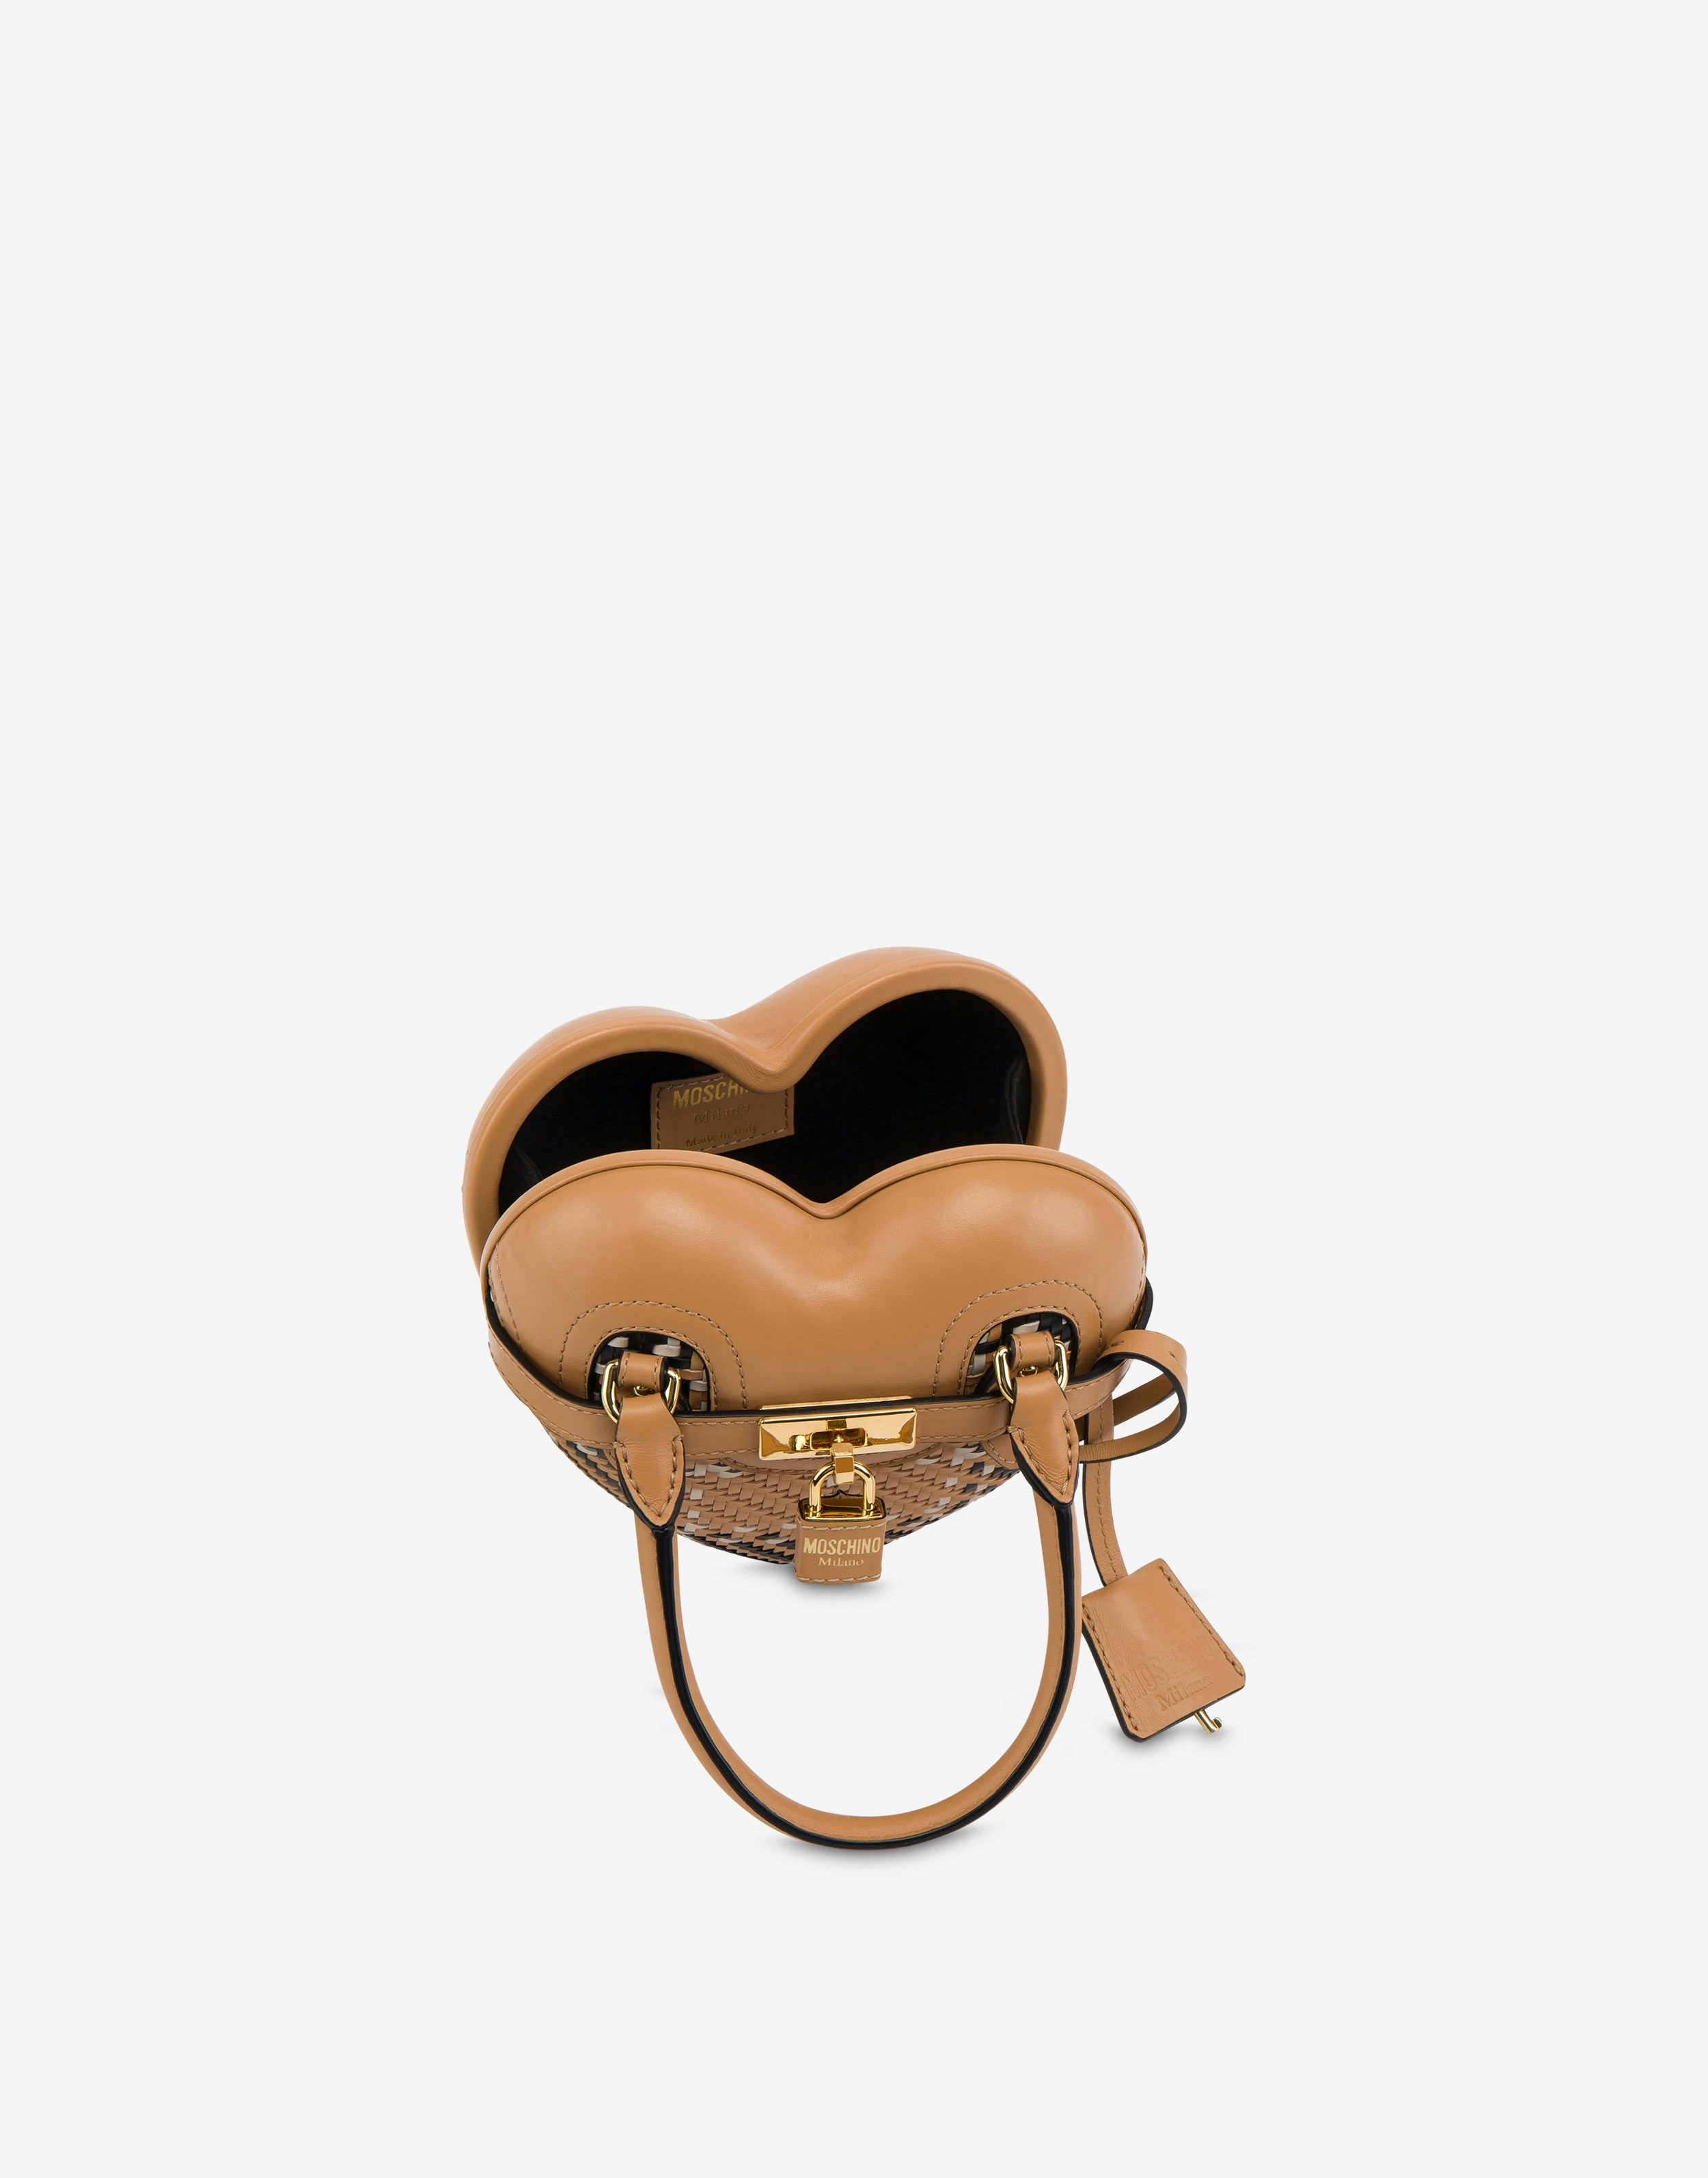 Moschino Heartbeat Bag ? Carreaux 1